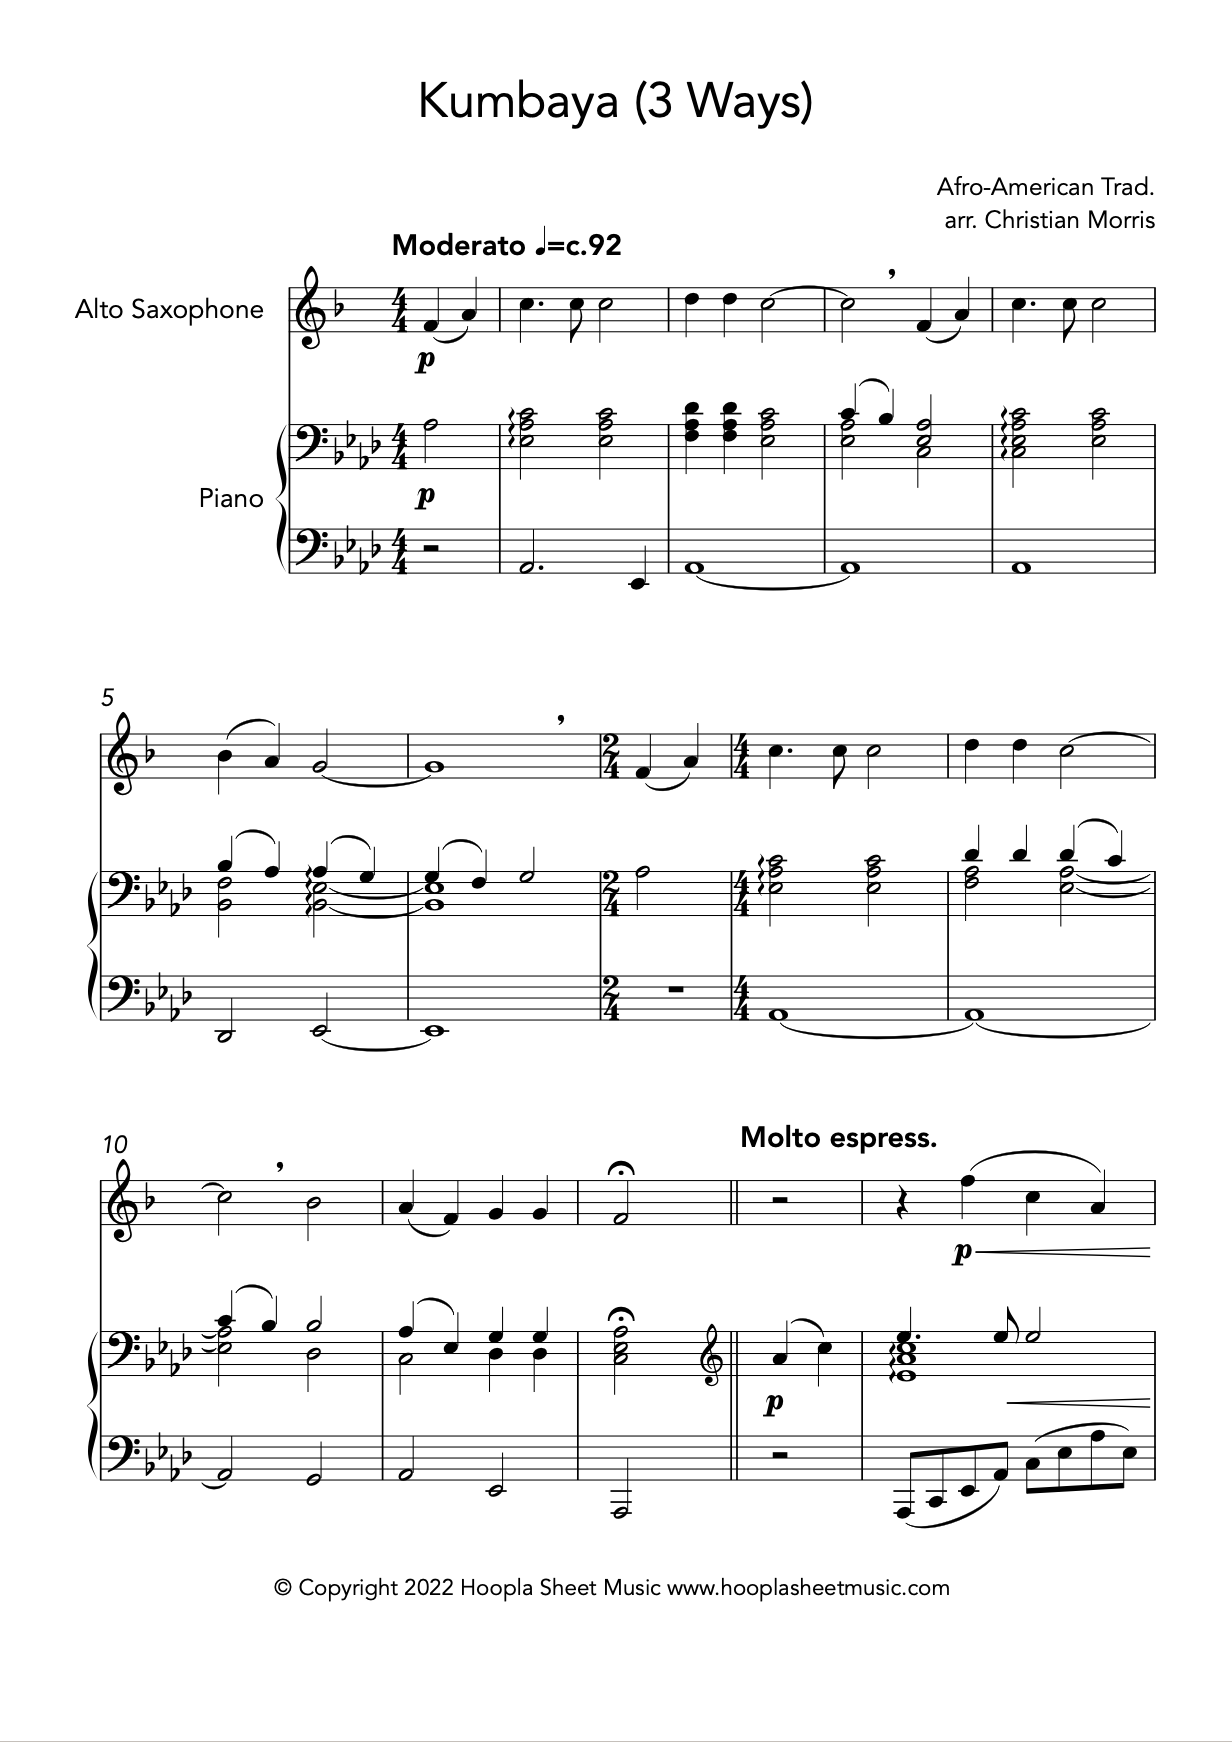 Kumbaya (Alto Saxophone and Piano)